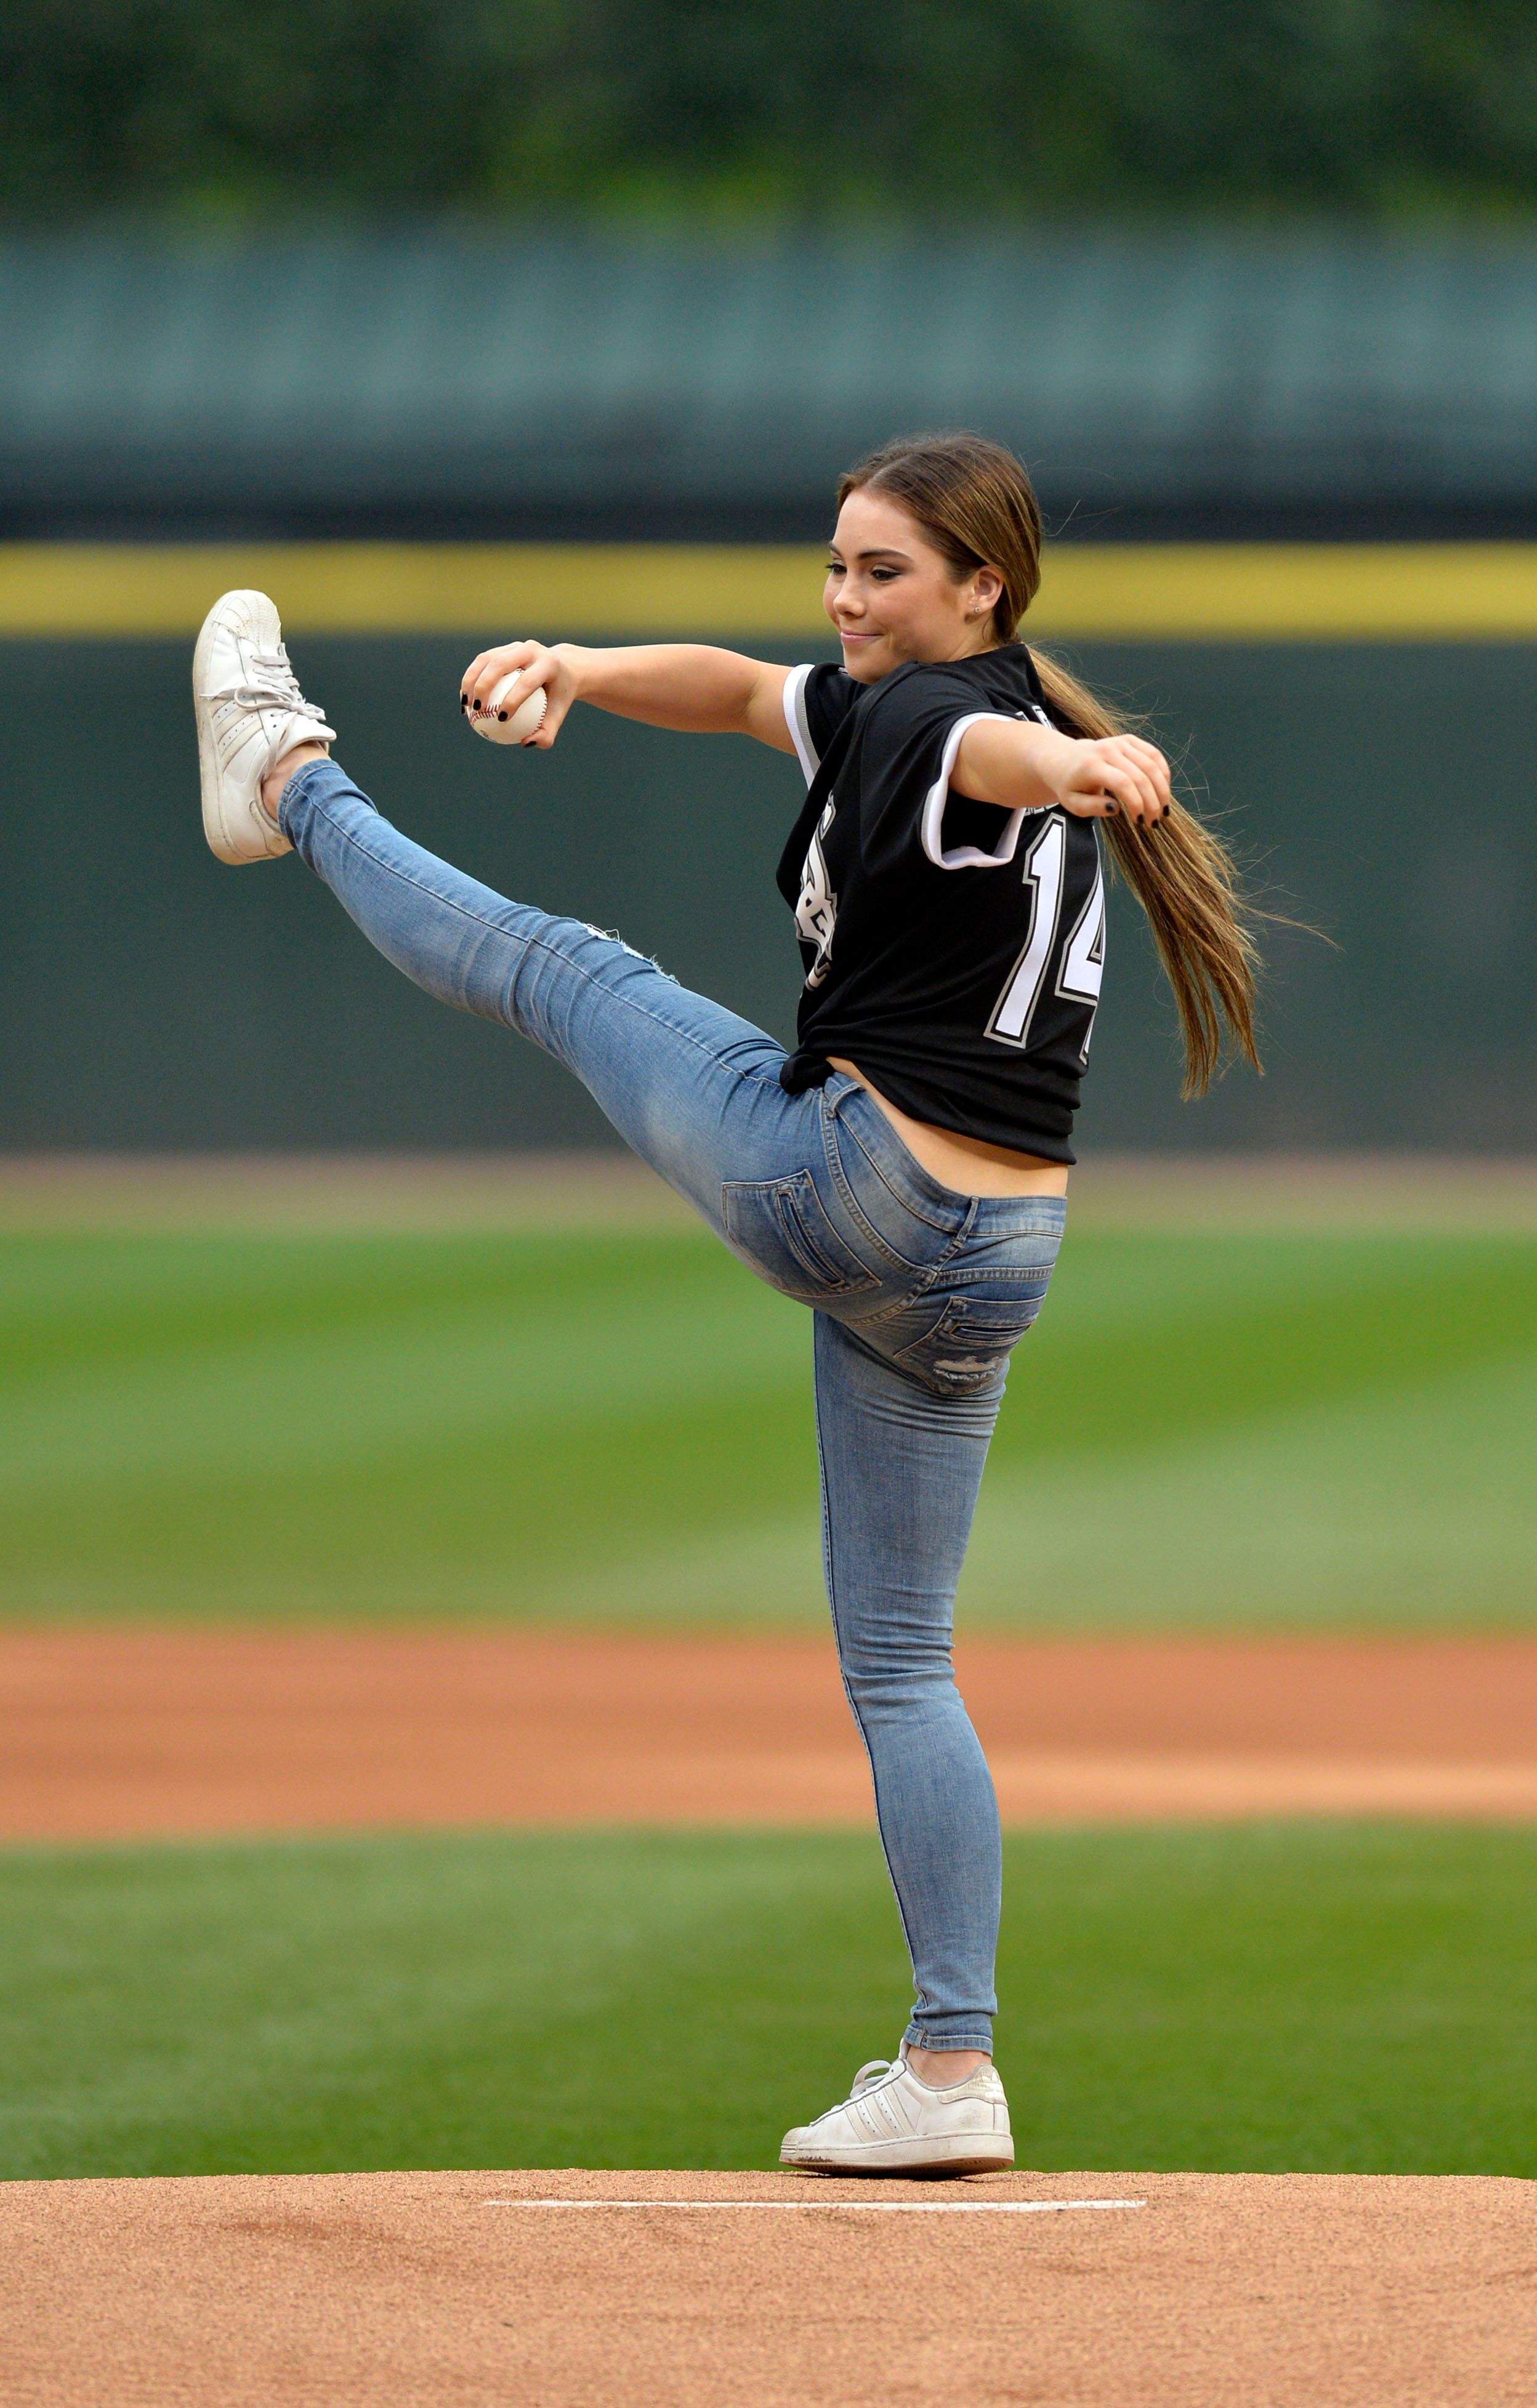 McKayla Maroney on a pitch